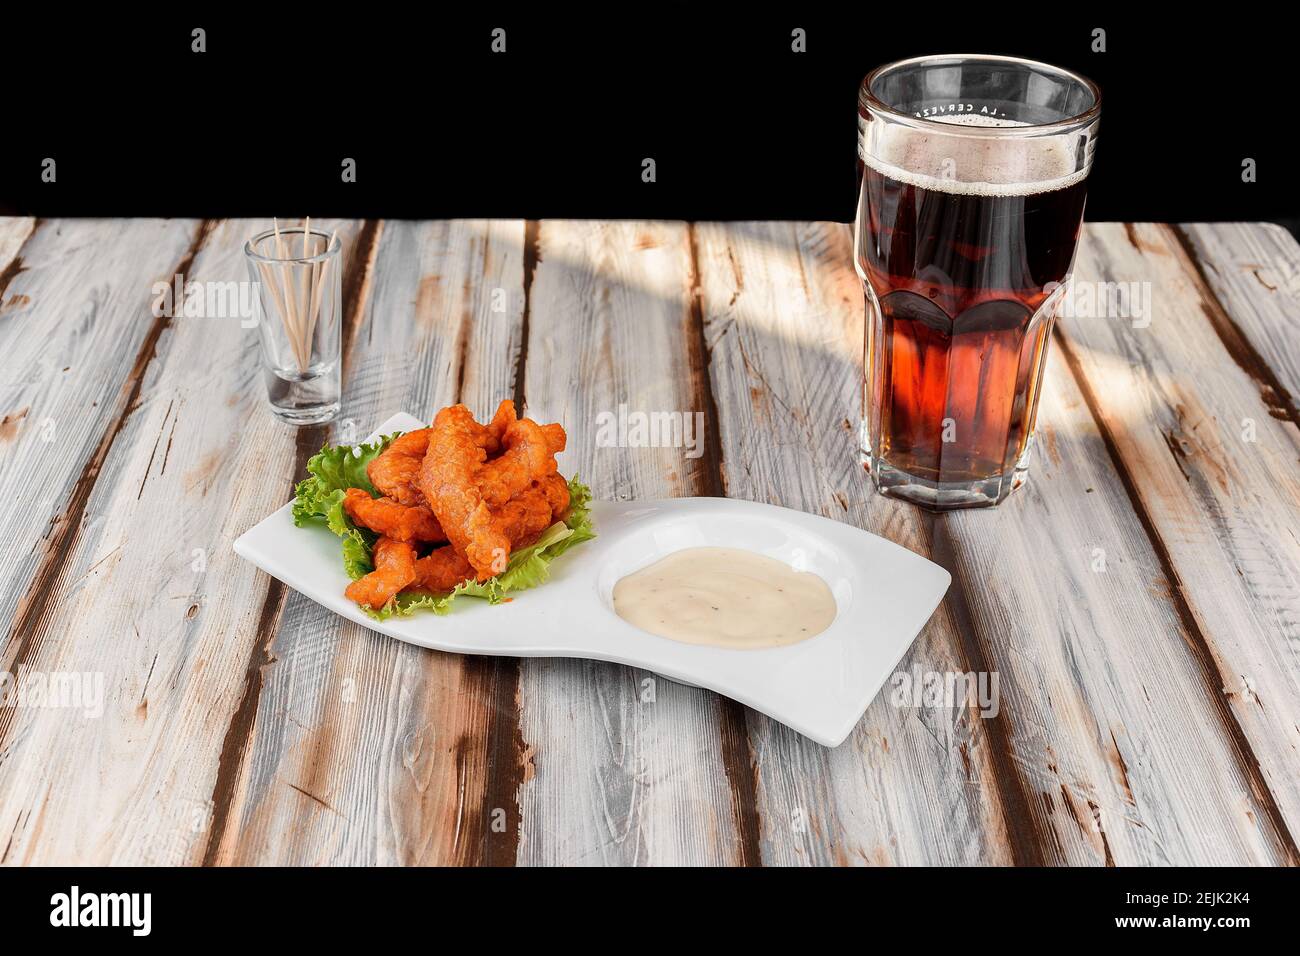 Piatto con ali di pollo con salsa rossa accompagnata da un birra scura Foto Stock